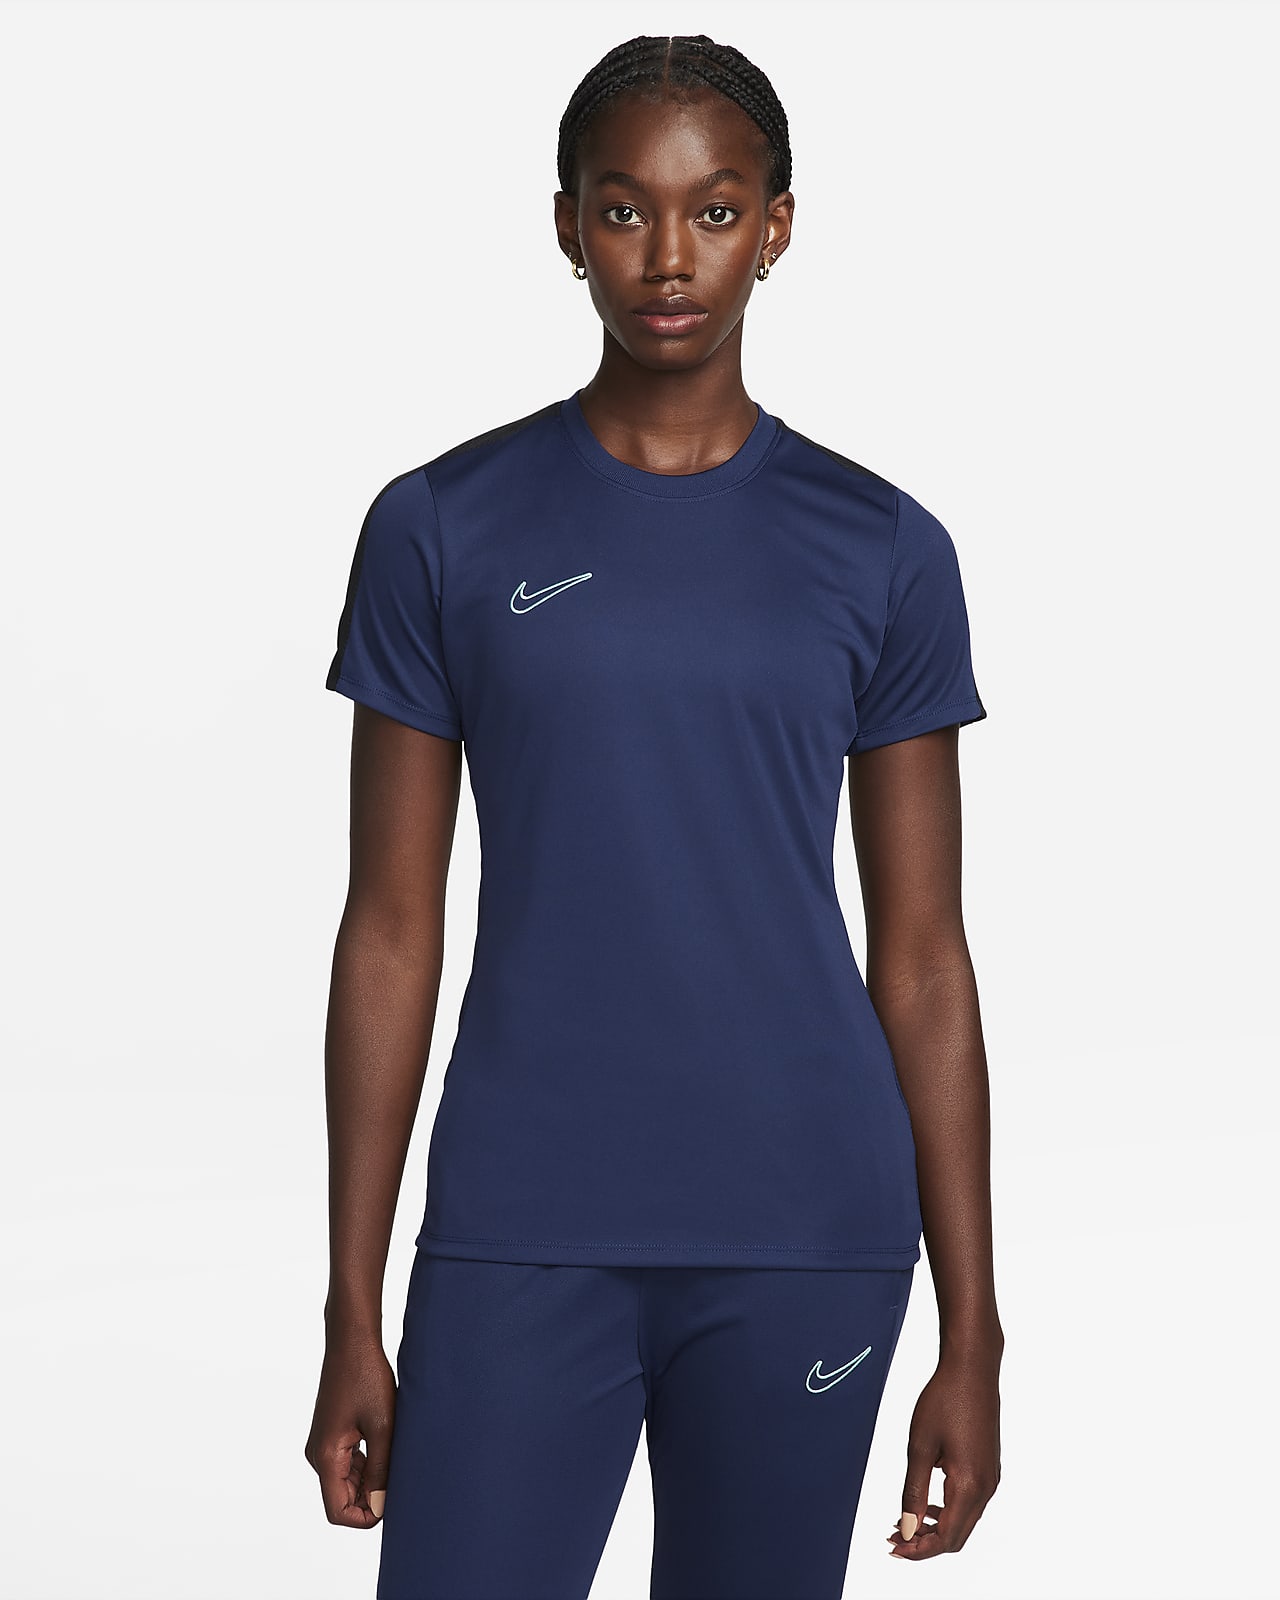 Nike Tee-Shirt Dri-Fit Contour M vêtement running homme : infos